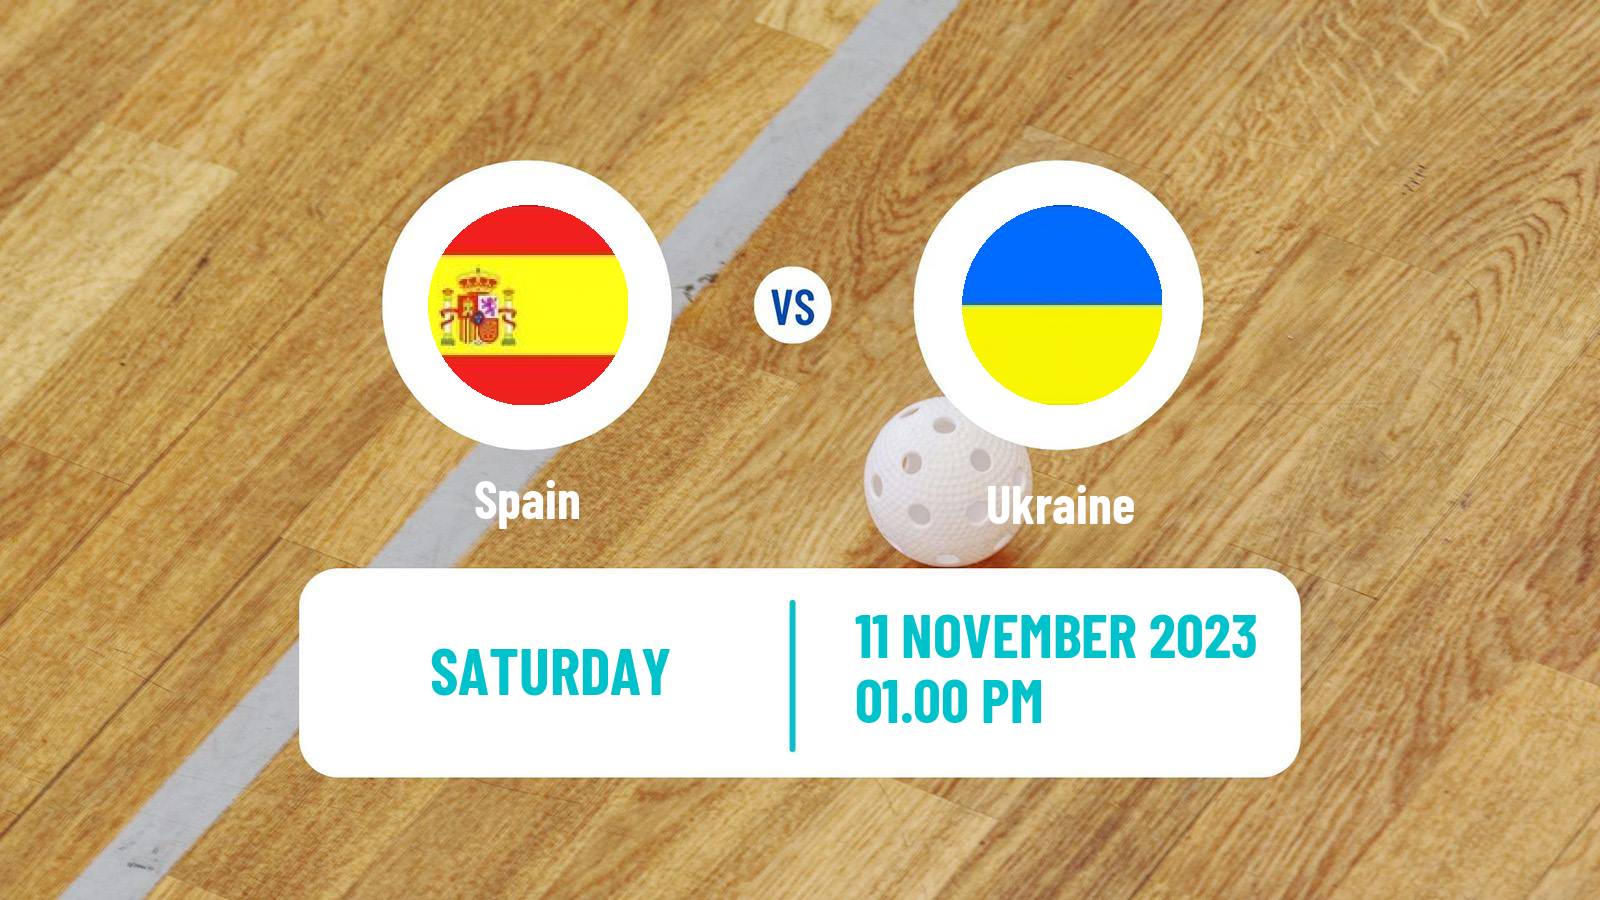 Floorball Friendly International Floorball Spain - Ukraine